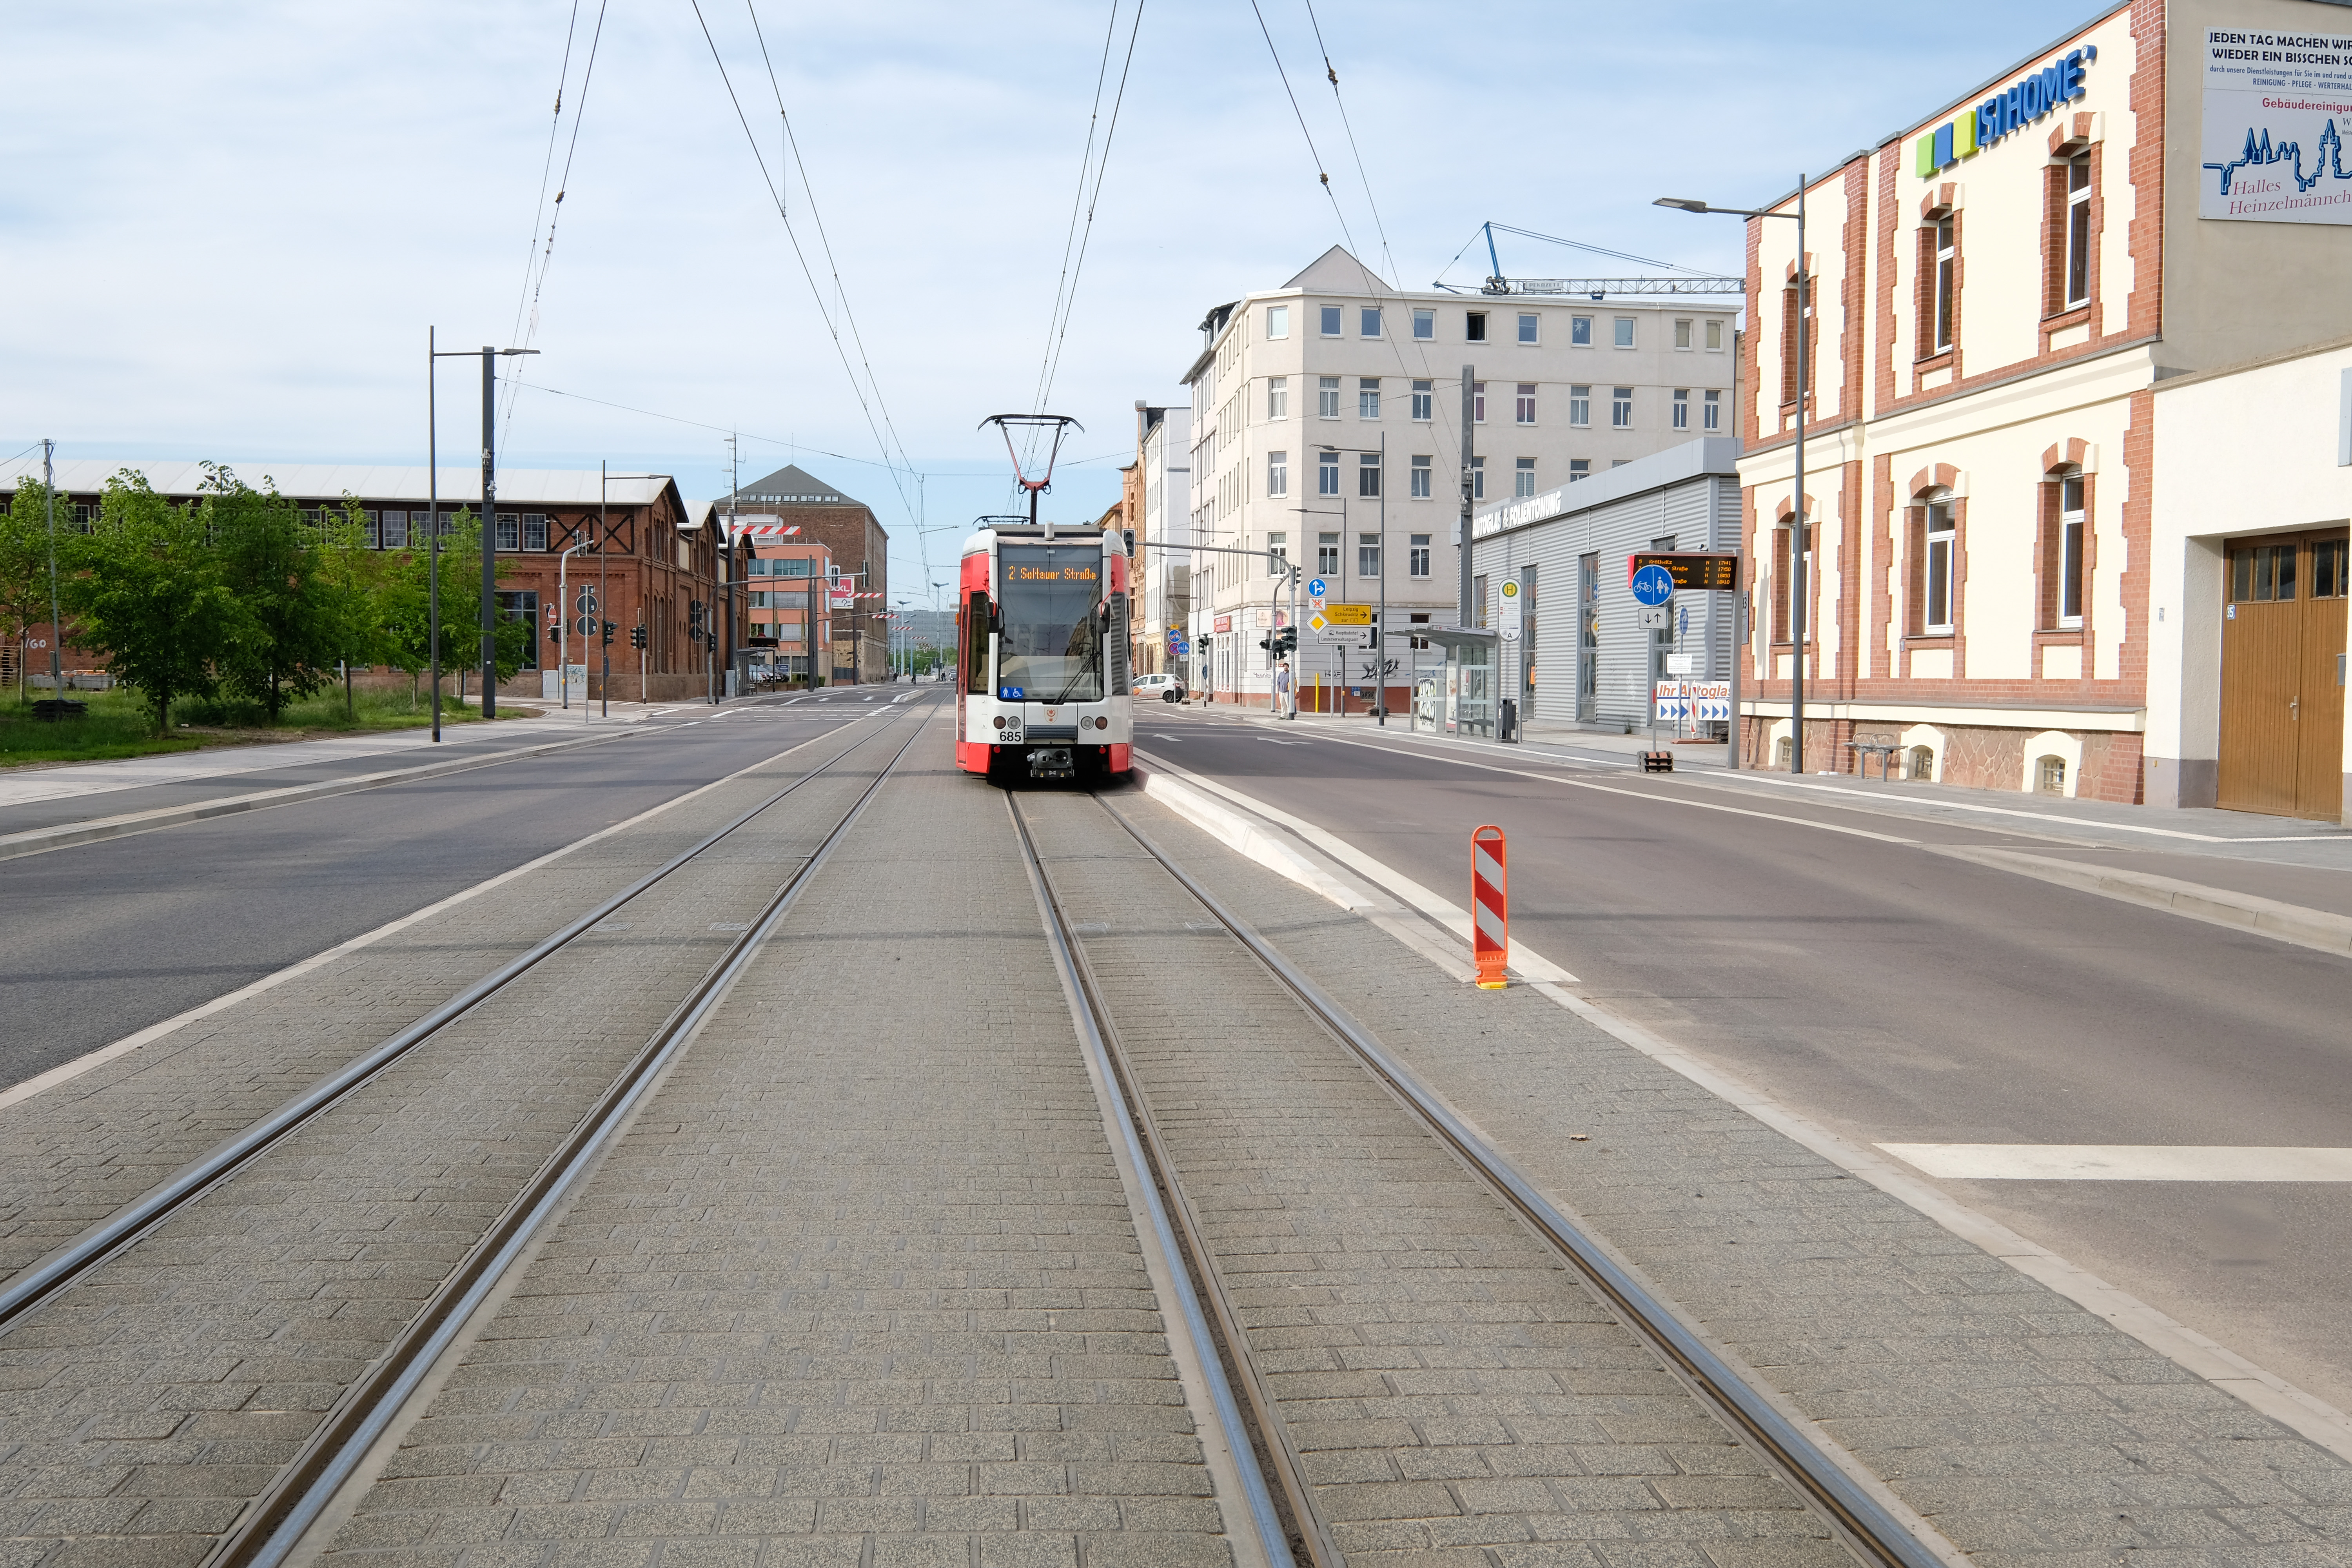 Das Bild zeigt mittig eine weiß-rote Straßenbahn auf einem Gleis, das von Pflastersteinen eingefasst ist. Sie steht an einem erhöhten Bordstein. Rechts und links der Straßenbahntrasse sind Fahrbahnen, Radwege und Fußwege.